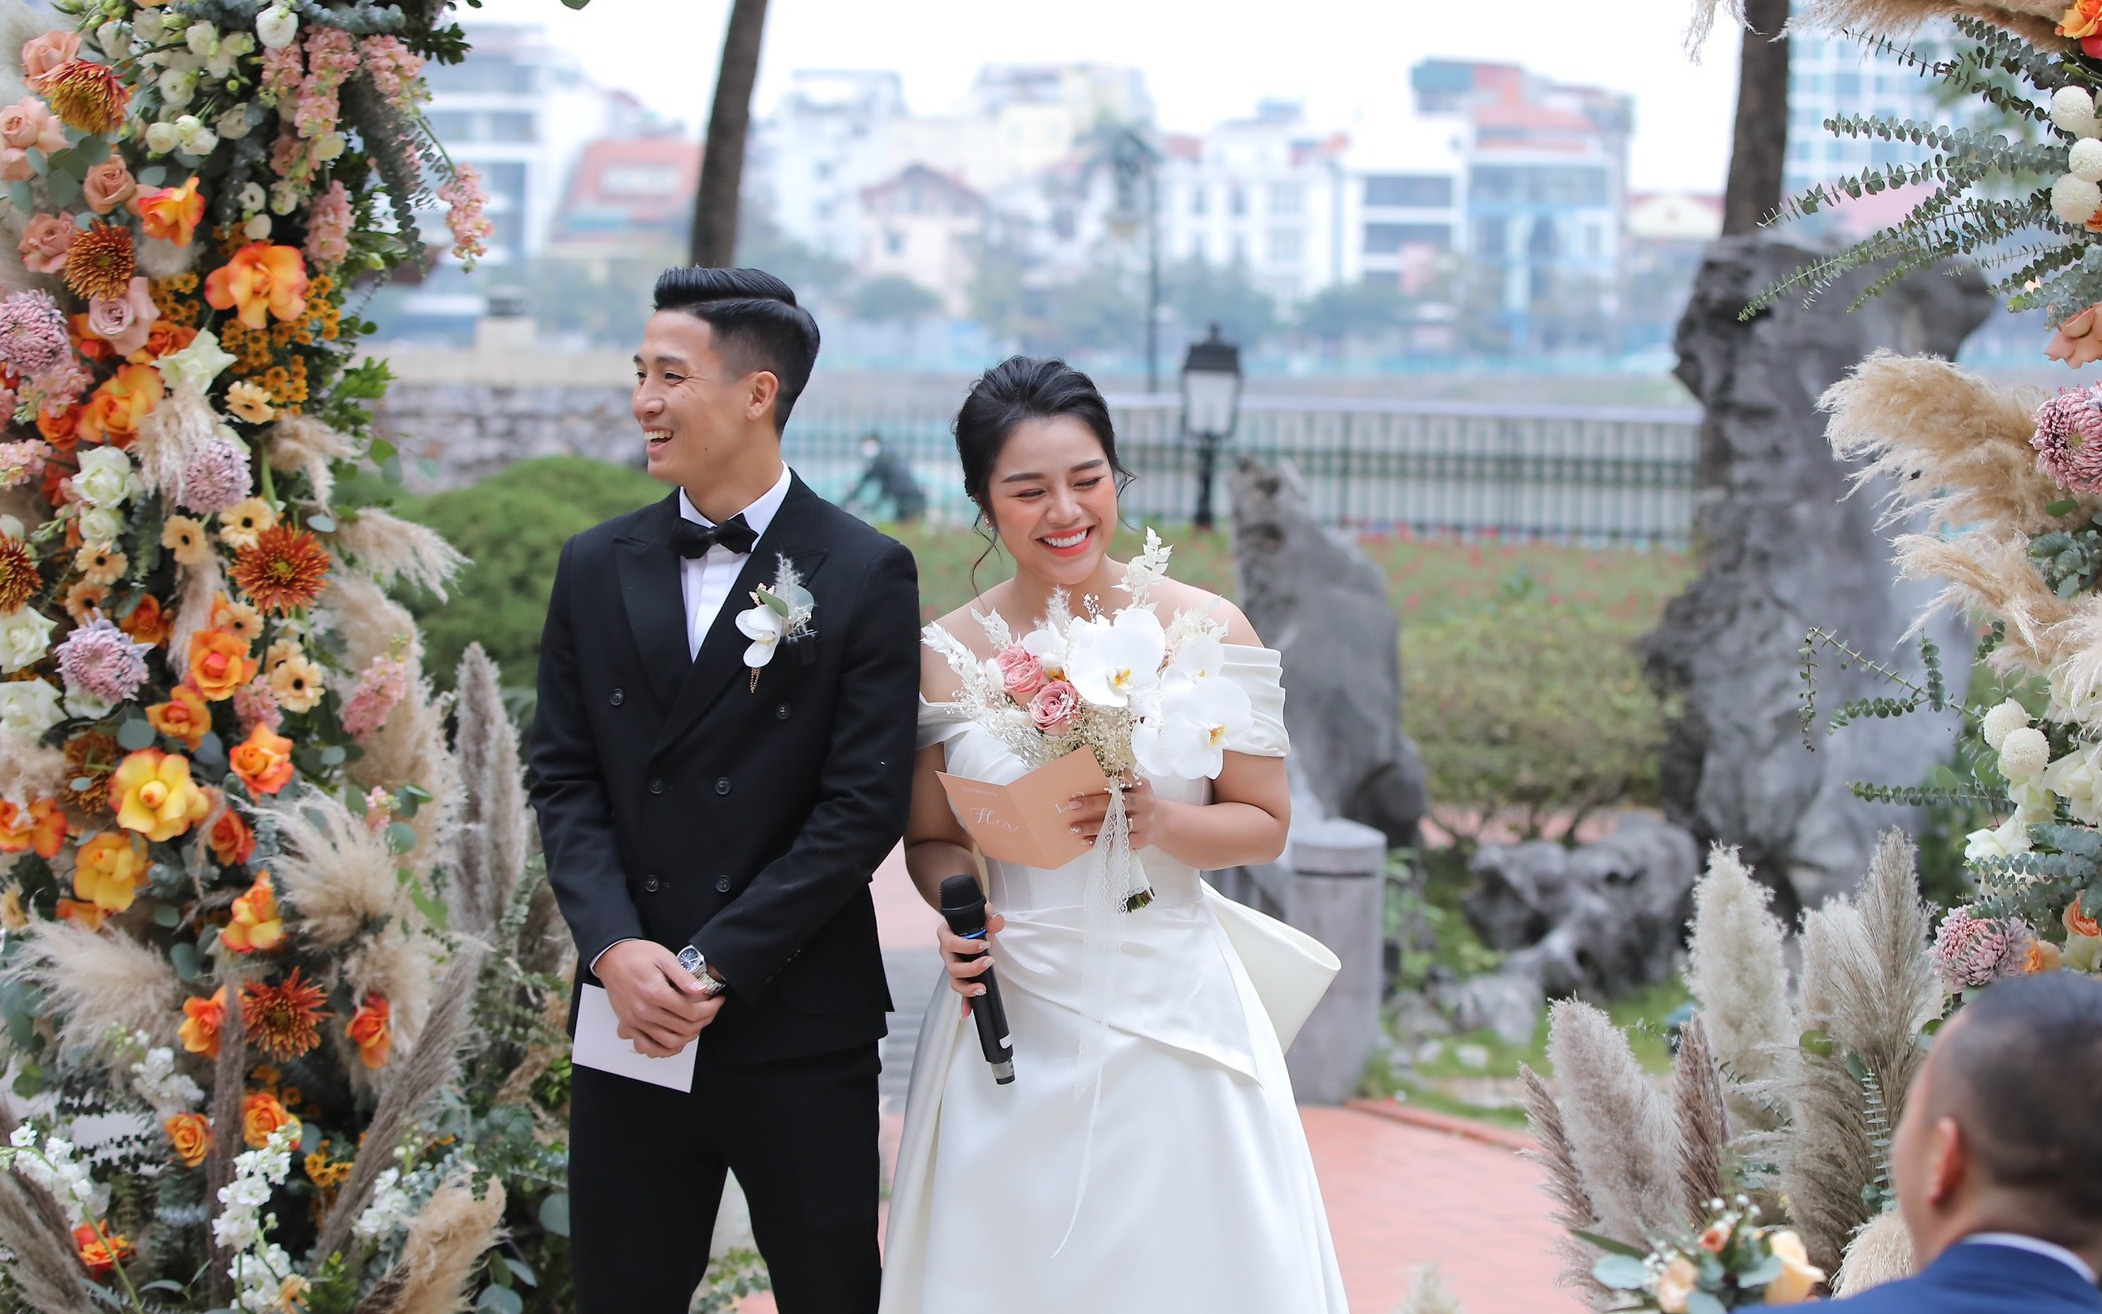 Bùi Tiến Dũng - Khánh Linh xuất hiện ở khu vực làm lễ, cô dâu cười tươi rạng rỡ dù thời tiết Hà Nội đang rất lạnh